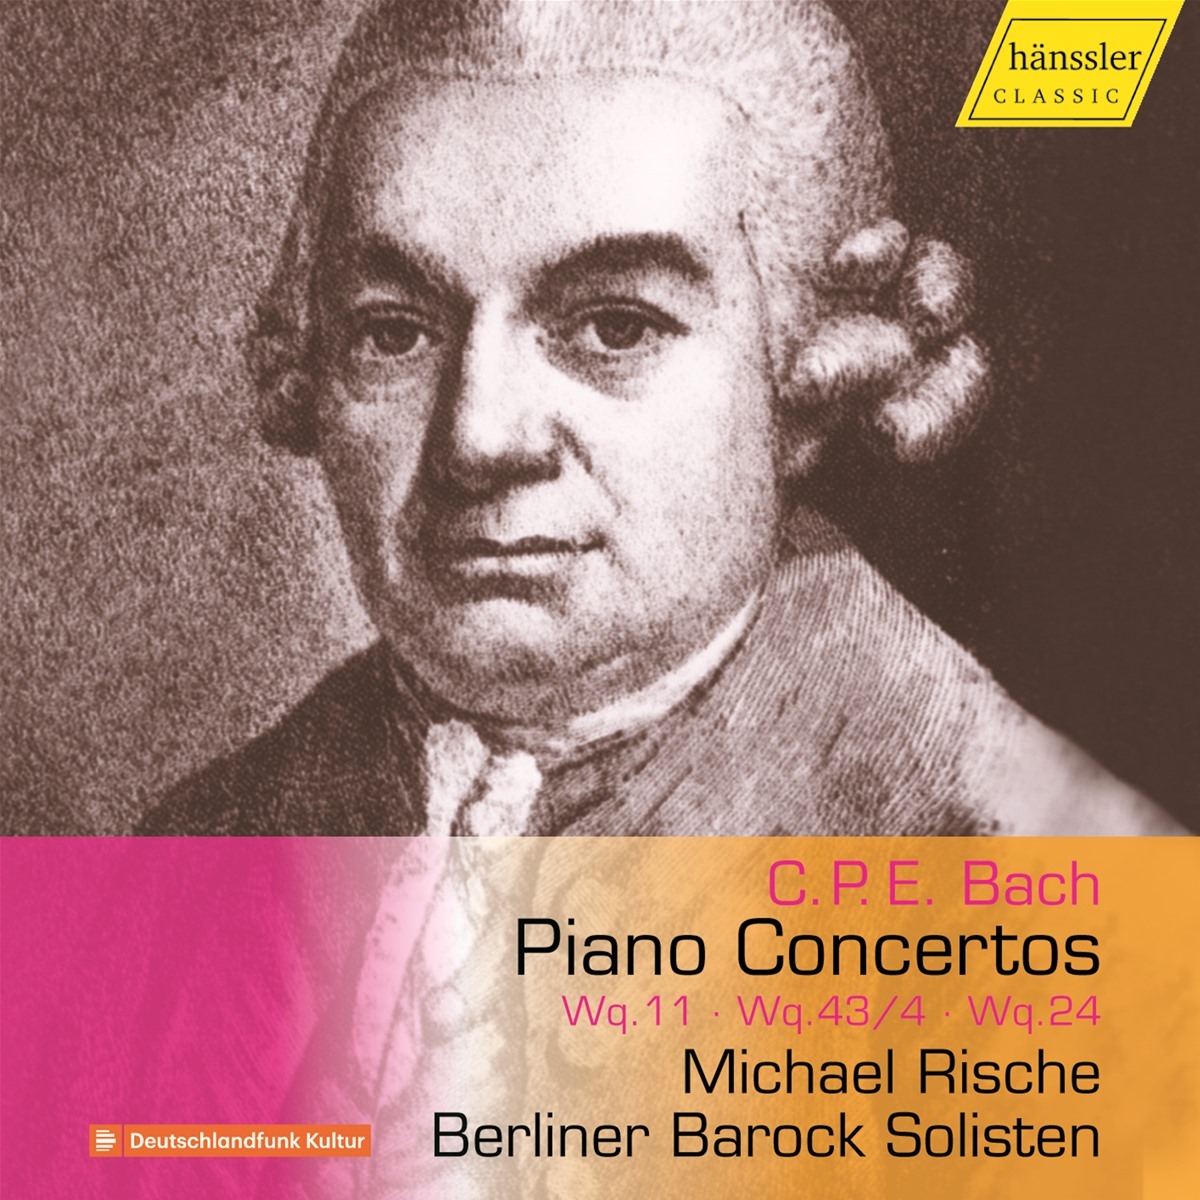 Piano Concertos Wq.11